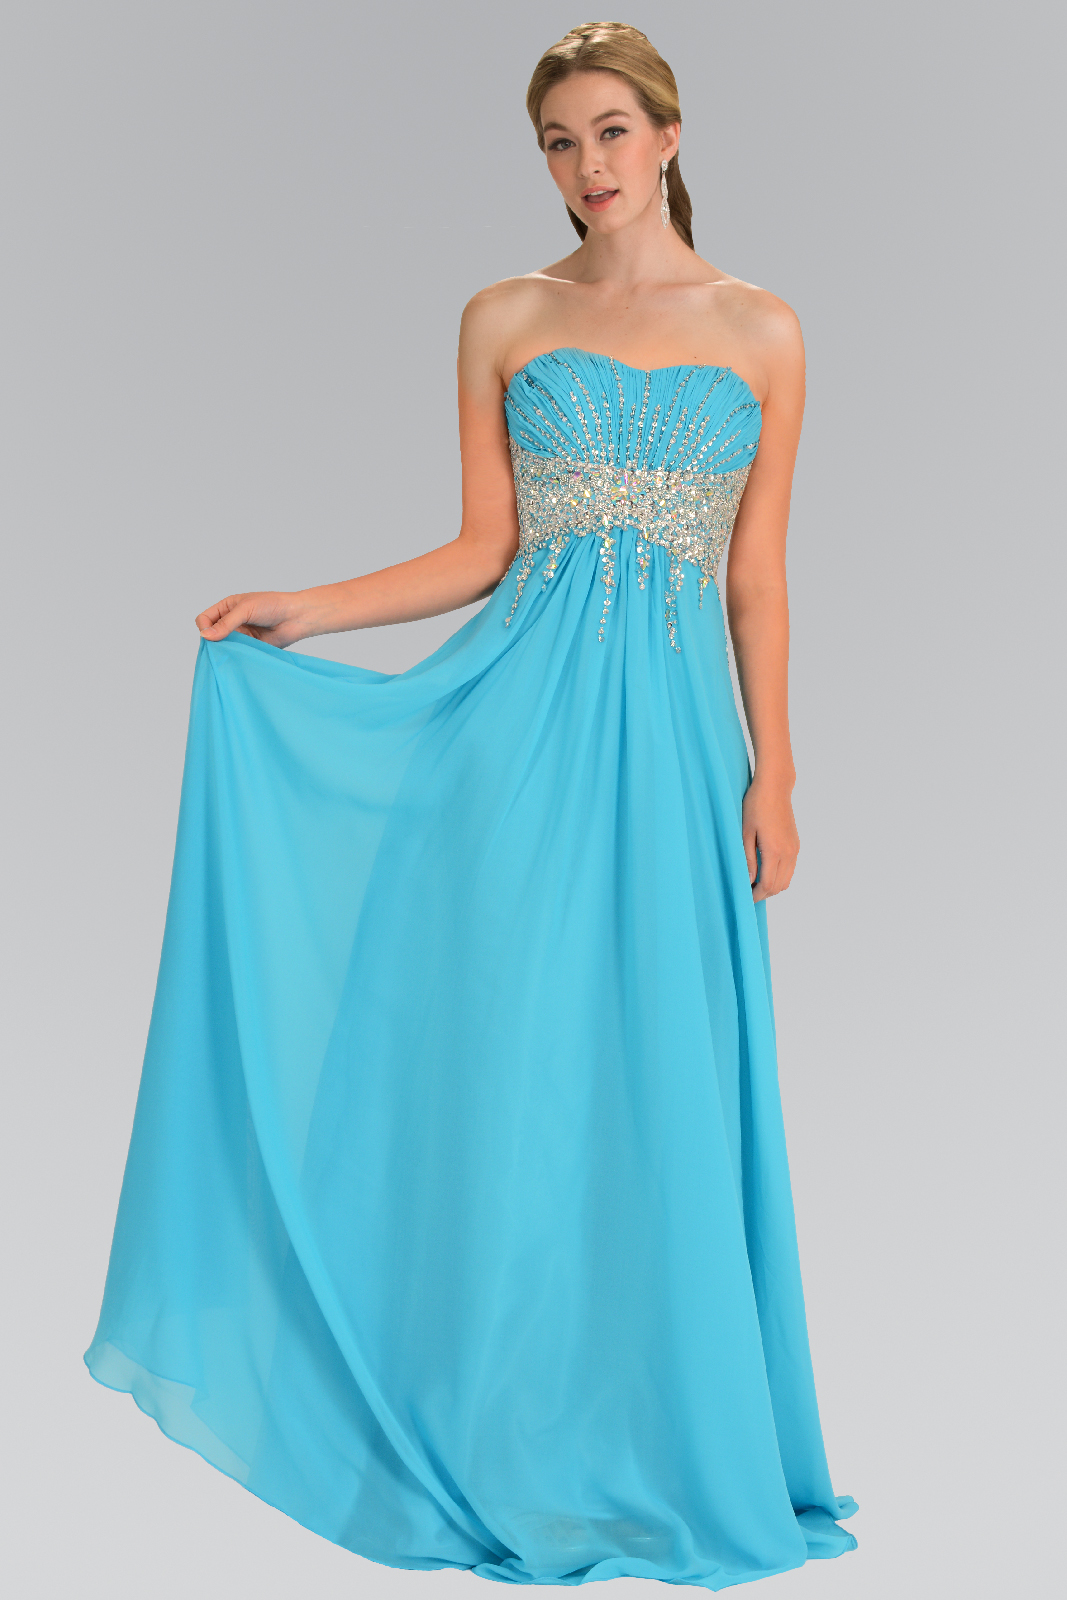 Turquoise chiffon long prom dress